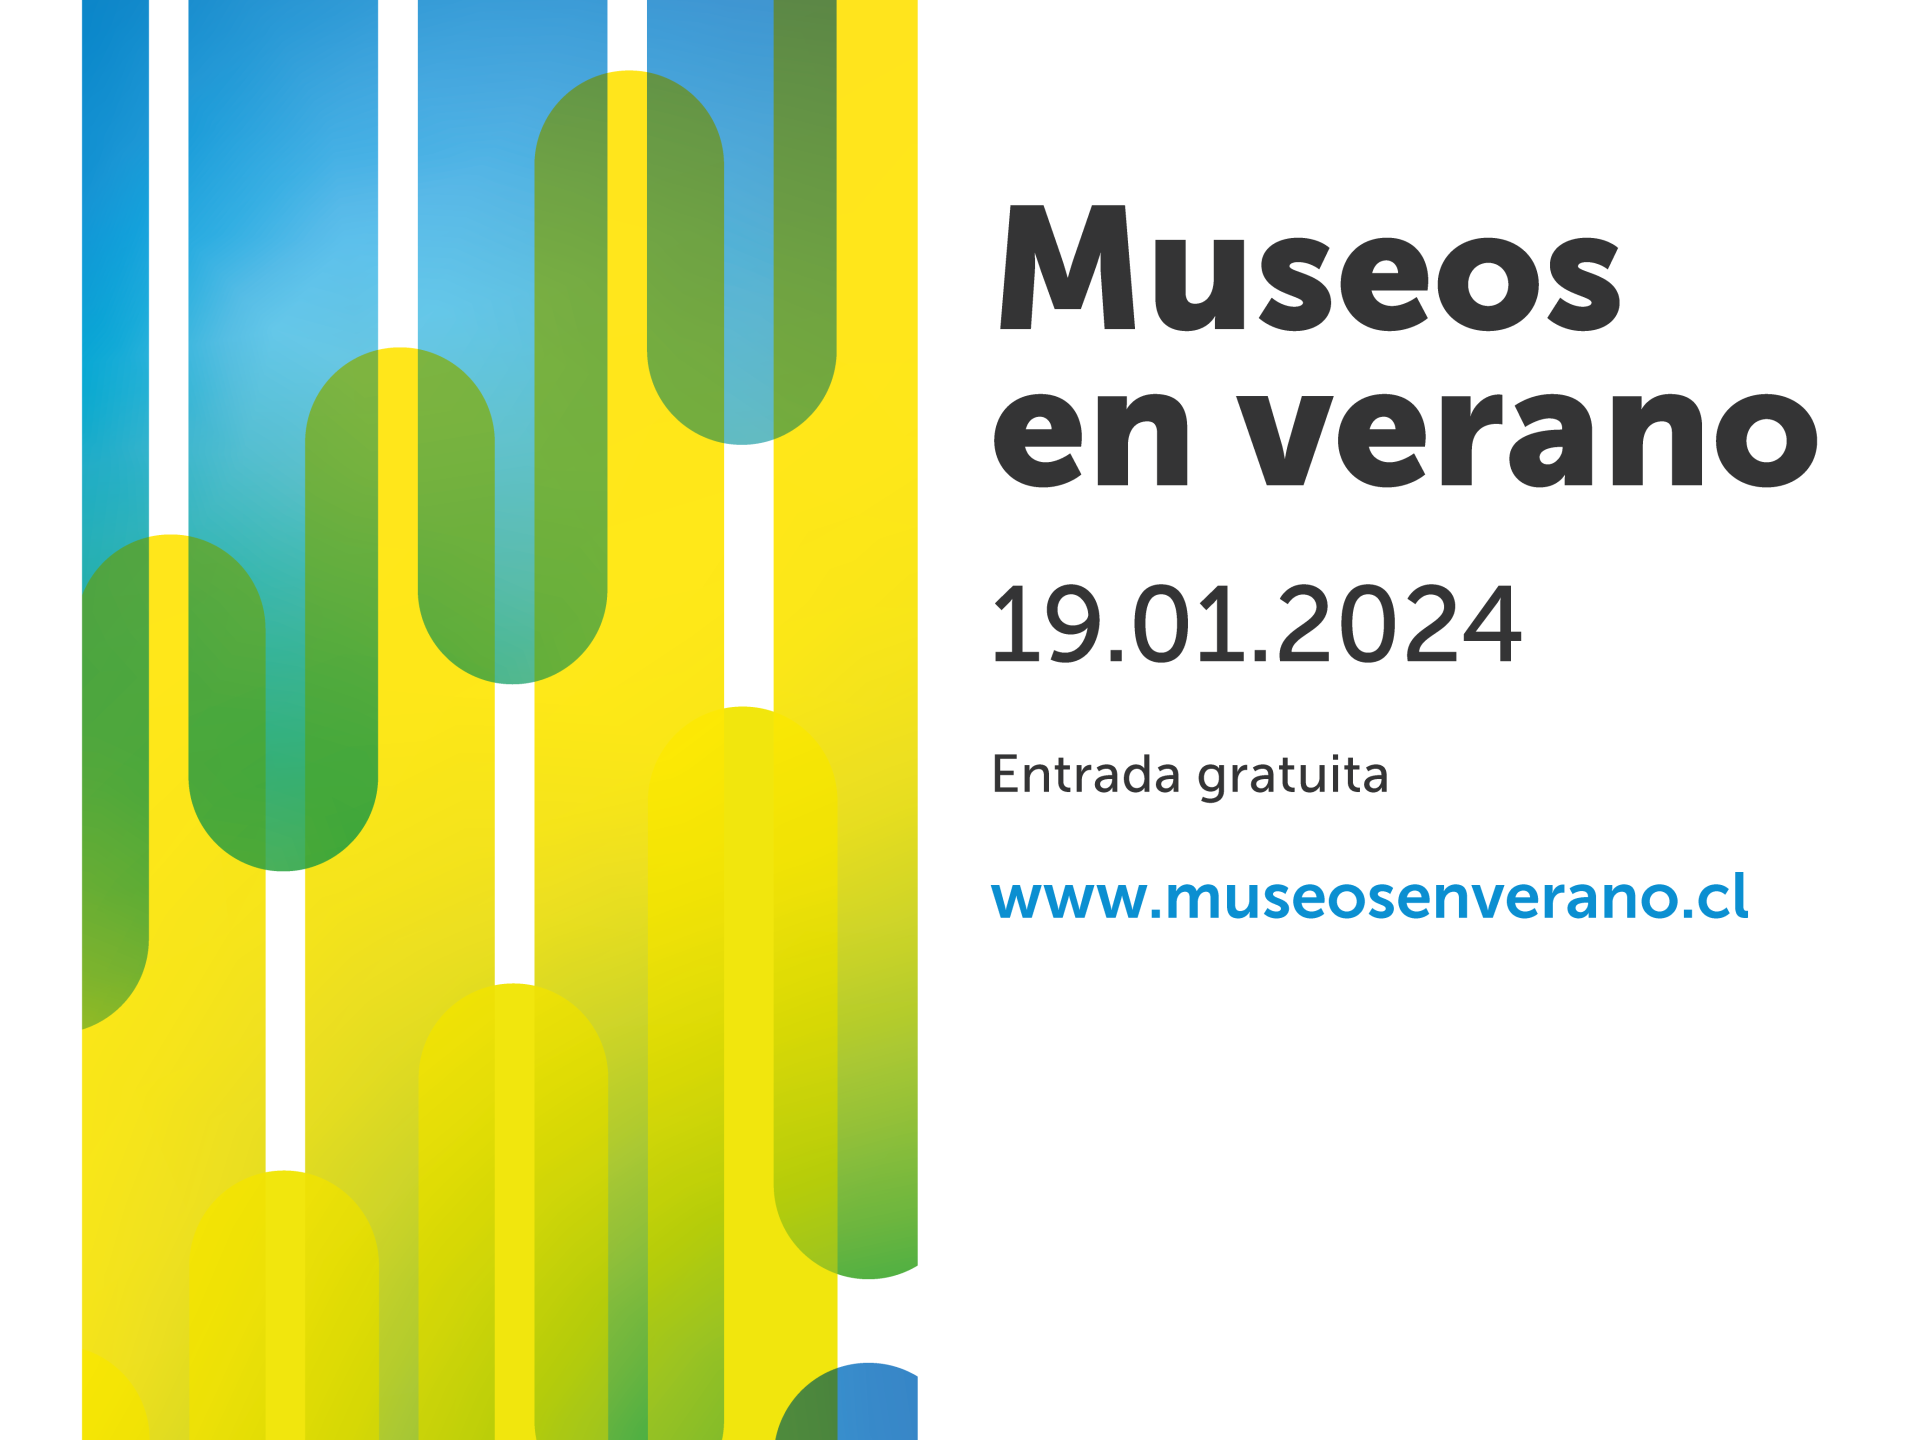 Museos en verano parte el día 19 de enero